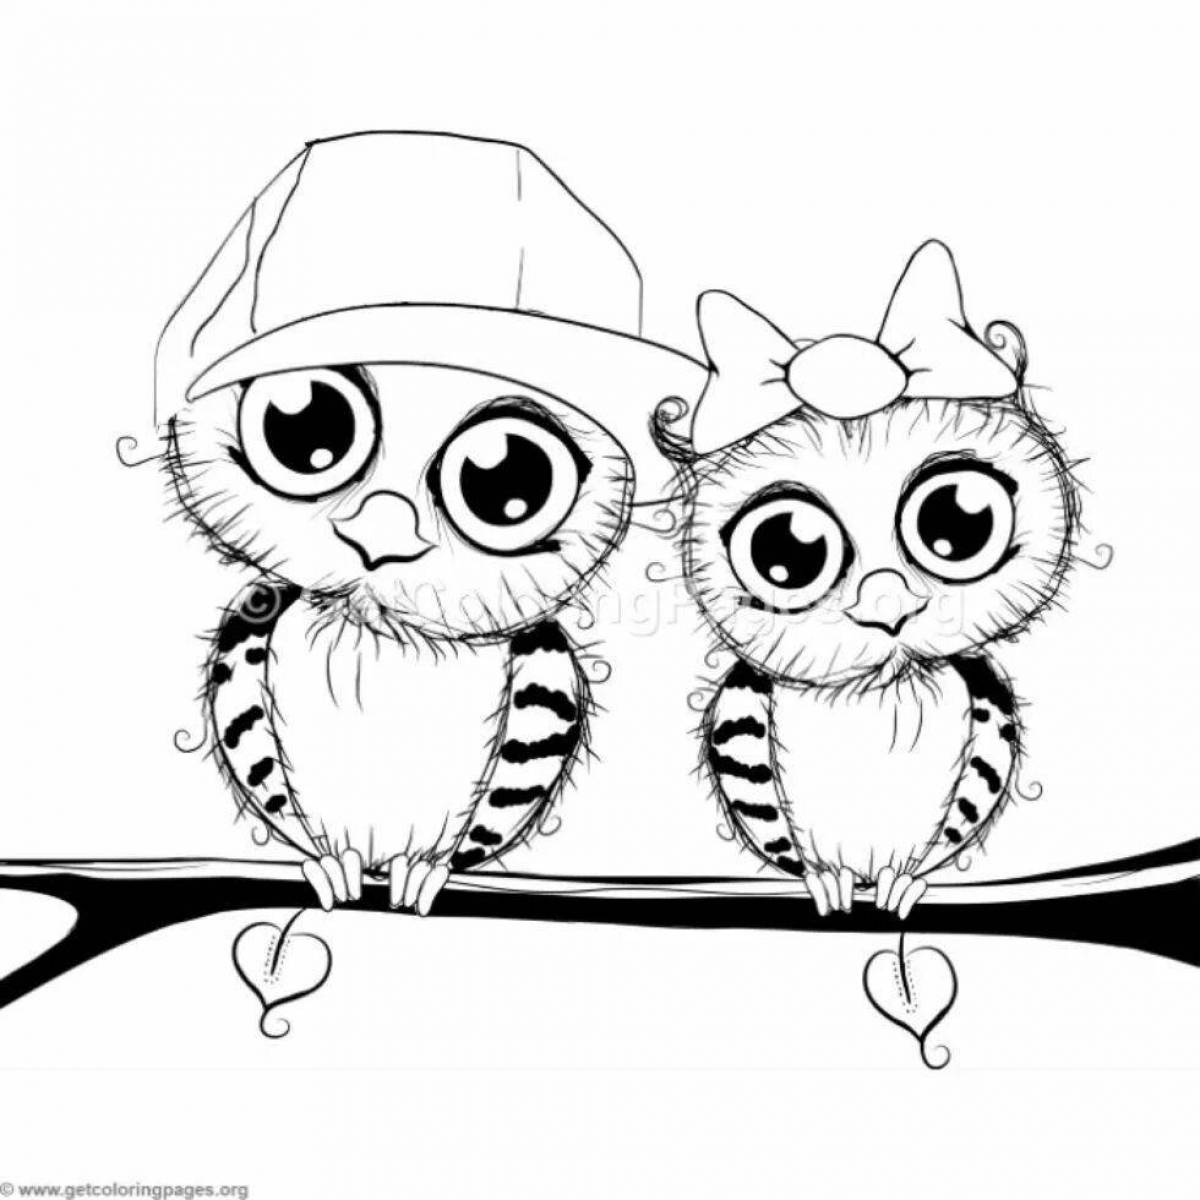 Joyful cute owl coloring book